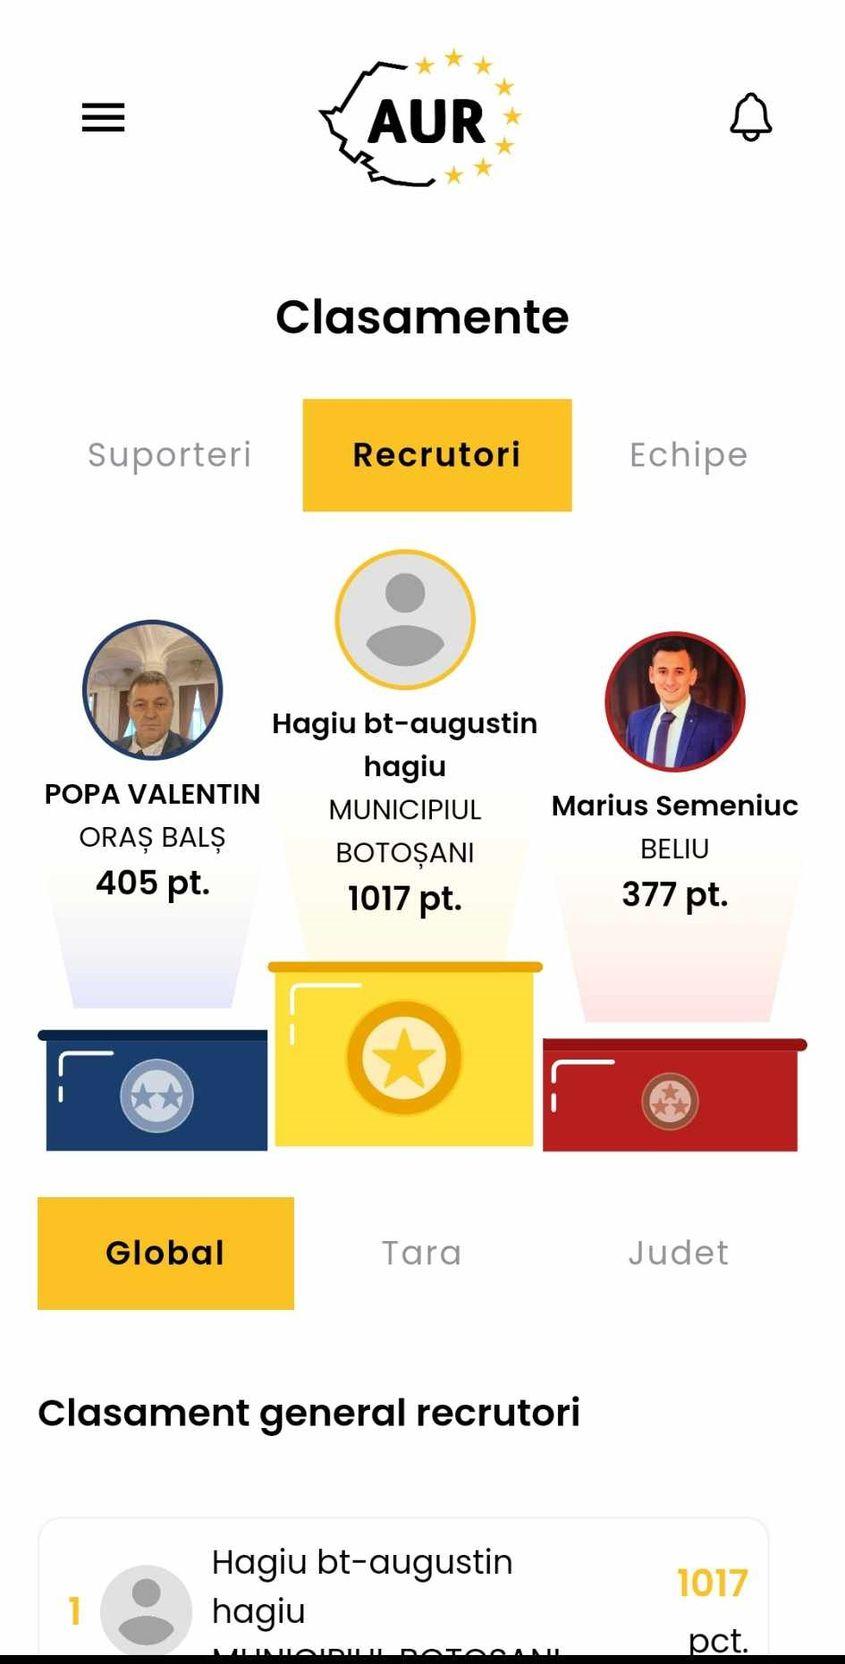 Așa arăta unul dintre clasamentele aplicației pe 22 ianuarie. Între timp, Hagiu din Botoșani a devenit Unitatea Națională Viitorul României